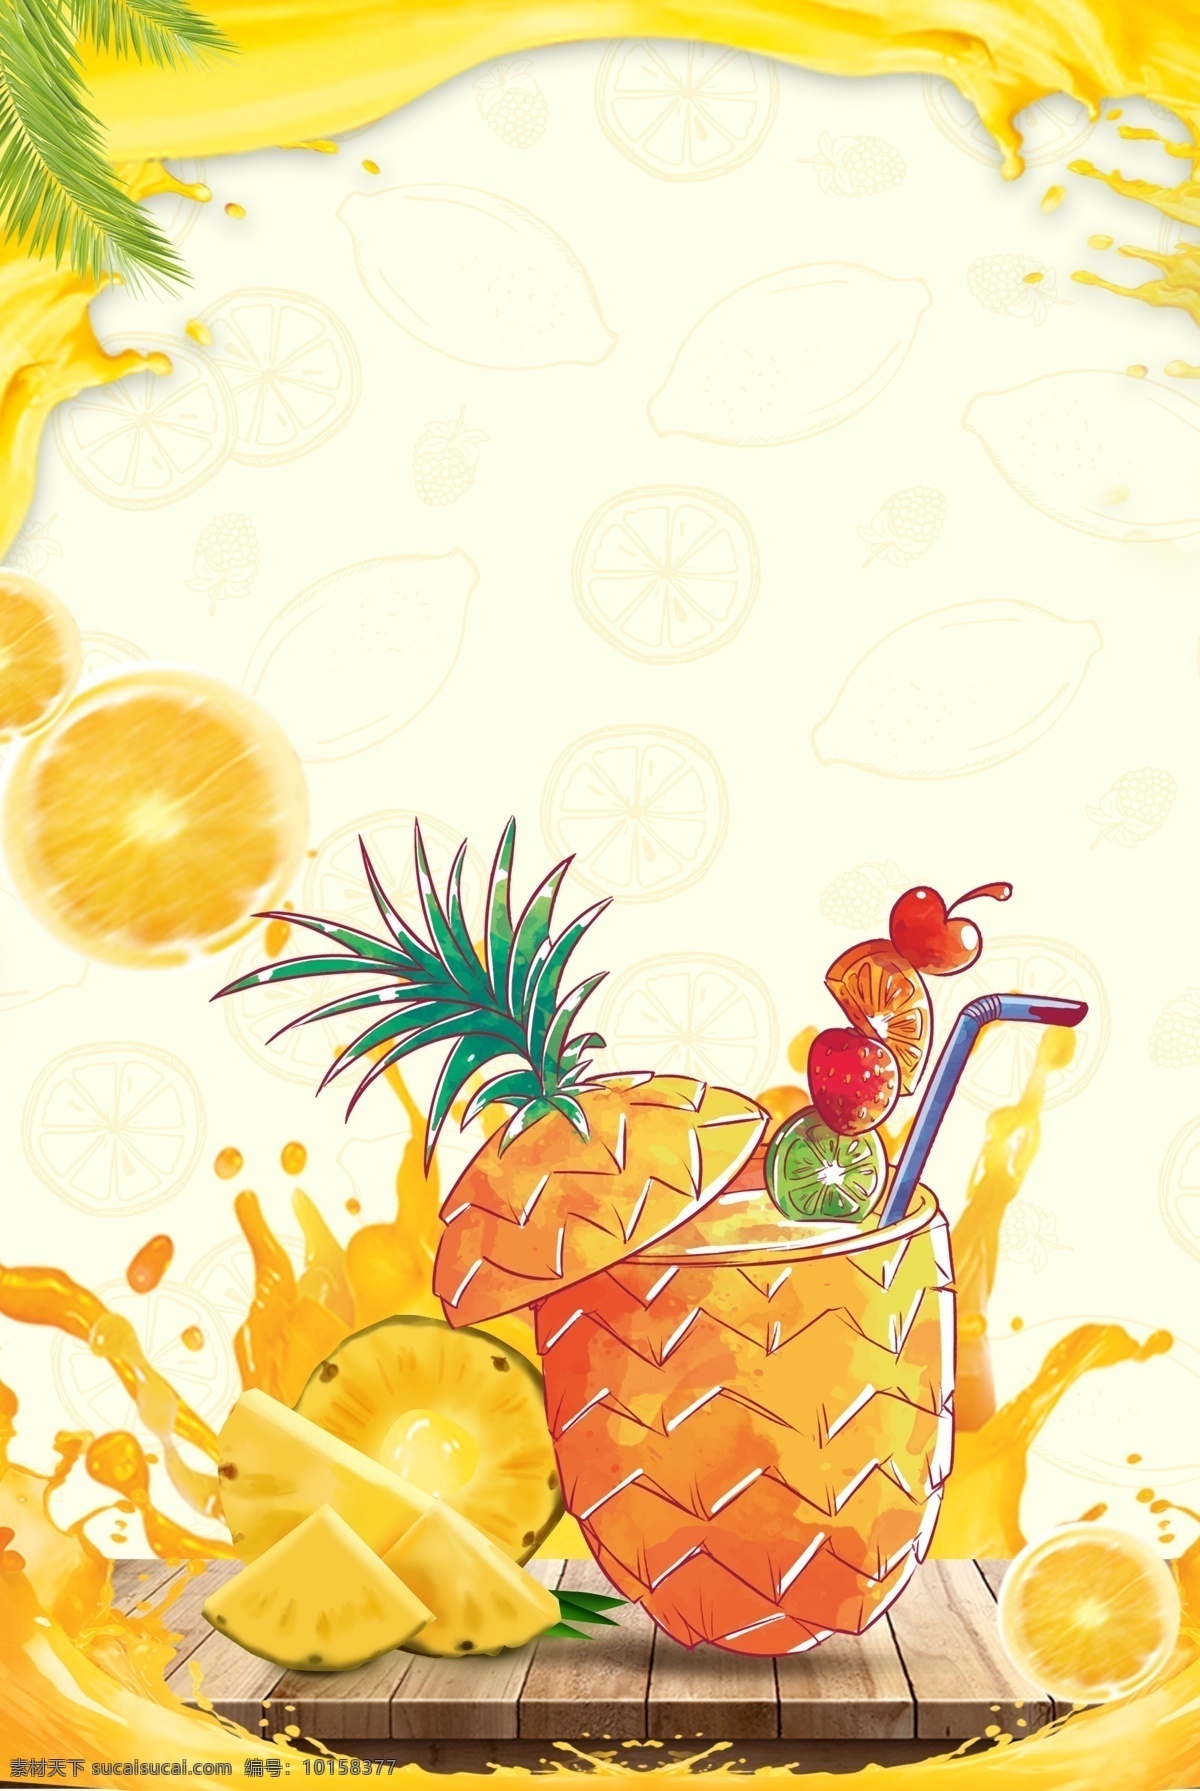 夏日 菠萝 清爽 背景 场景 卡通 手绘 清新 自然 主题